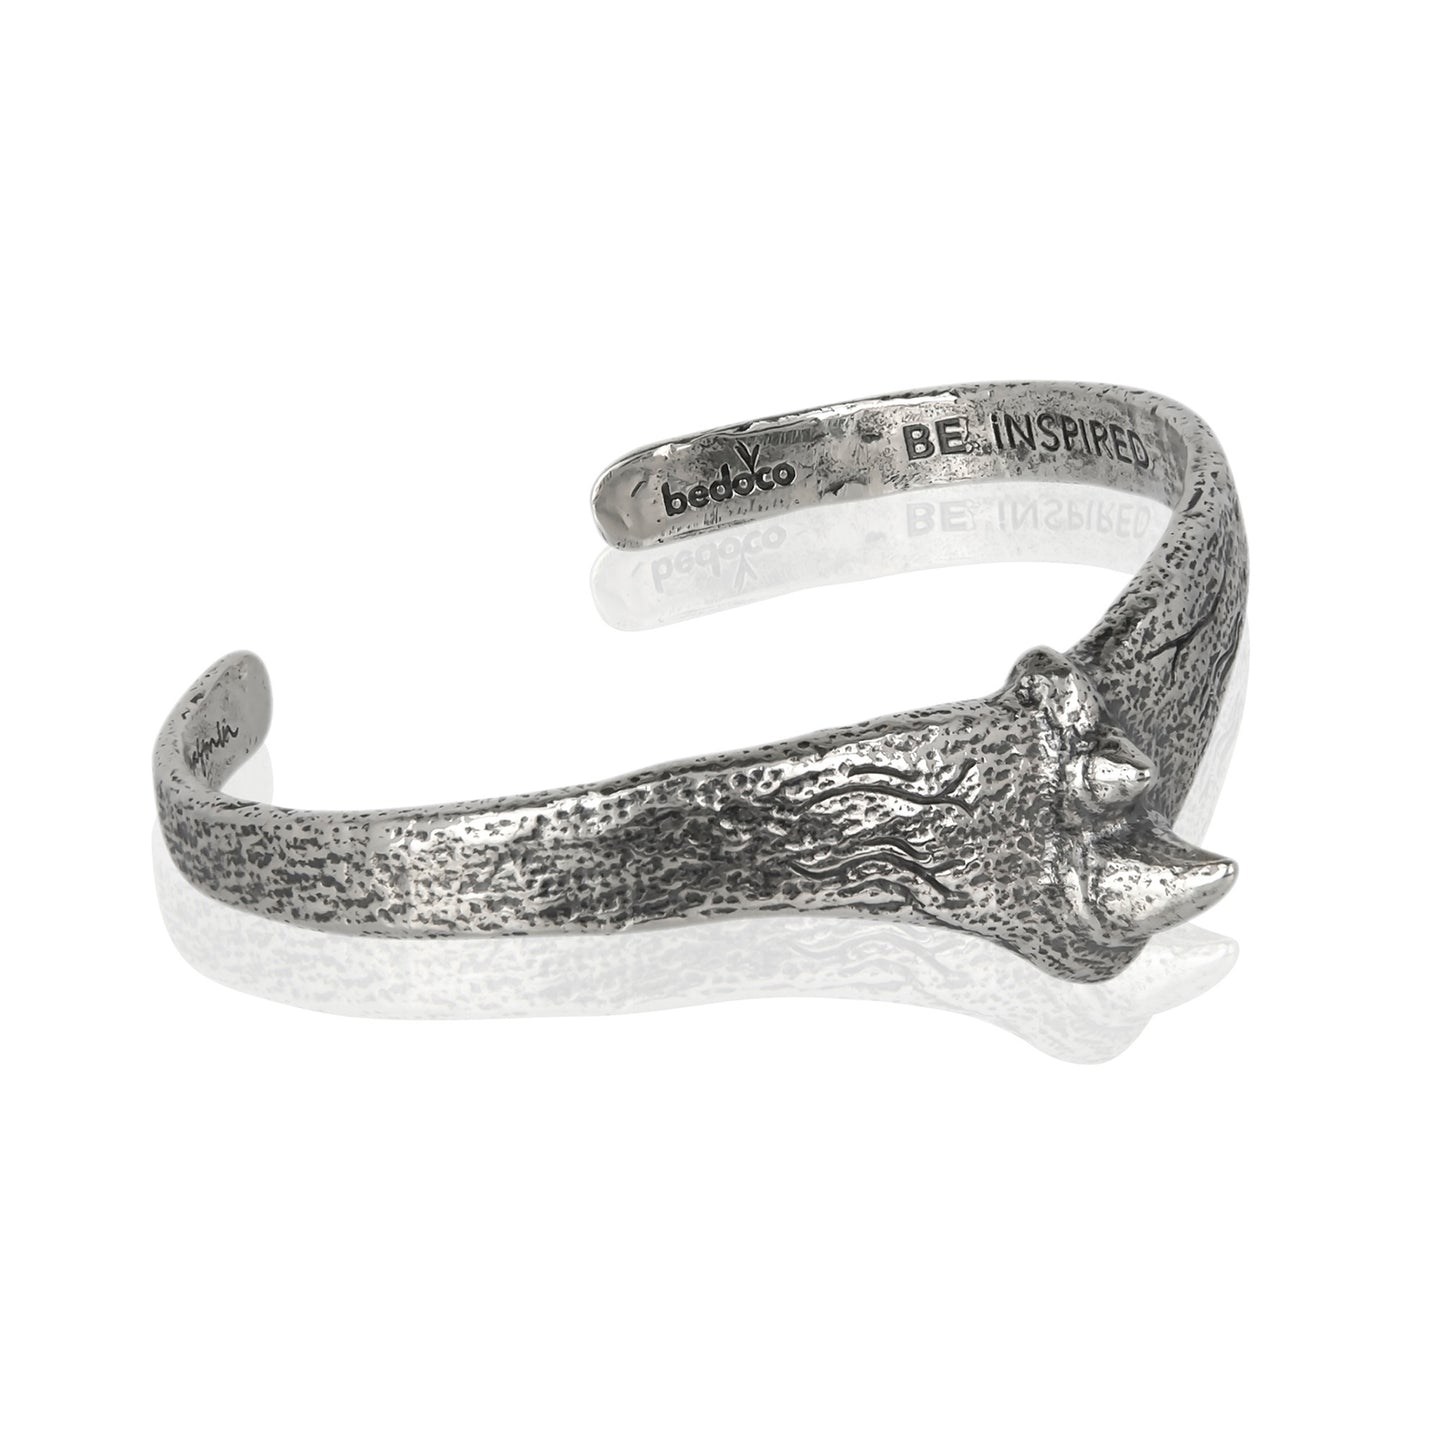 Rhino Horn Cuff Bracelet